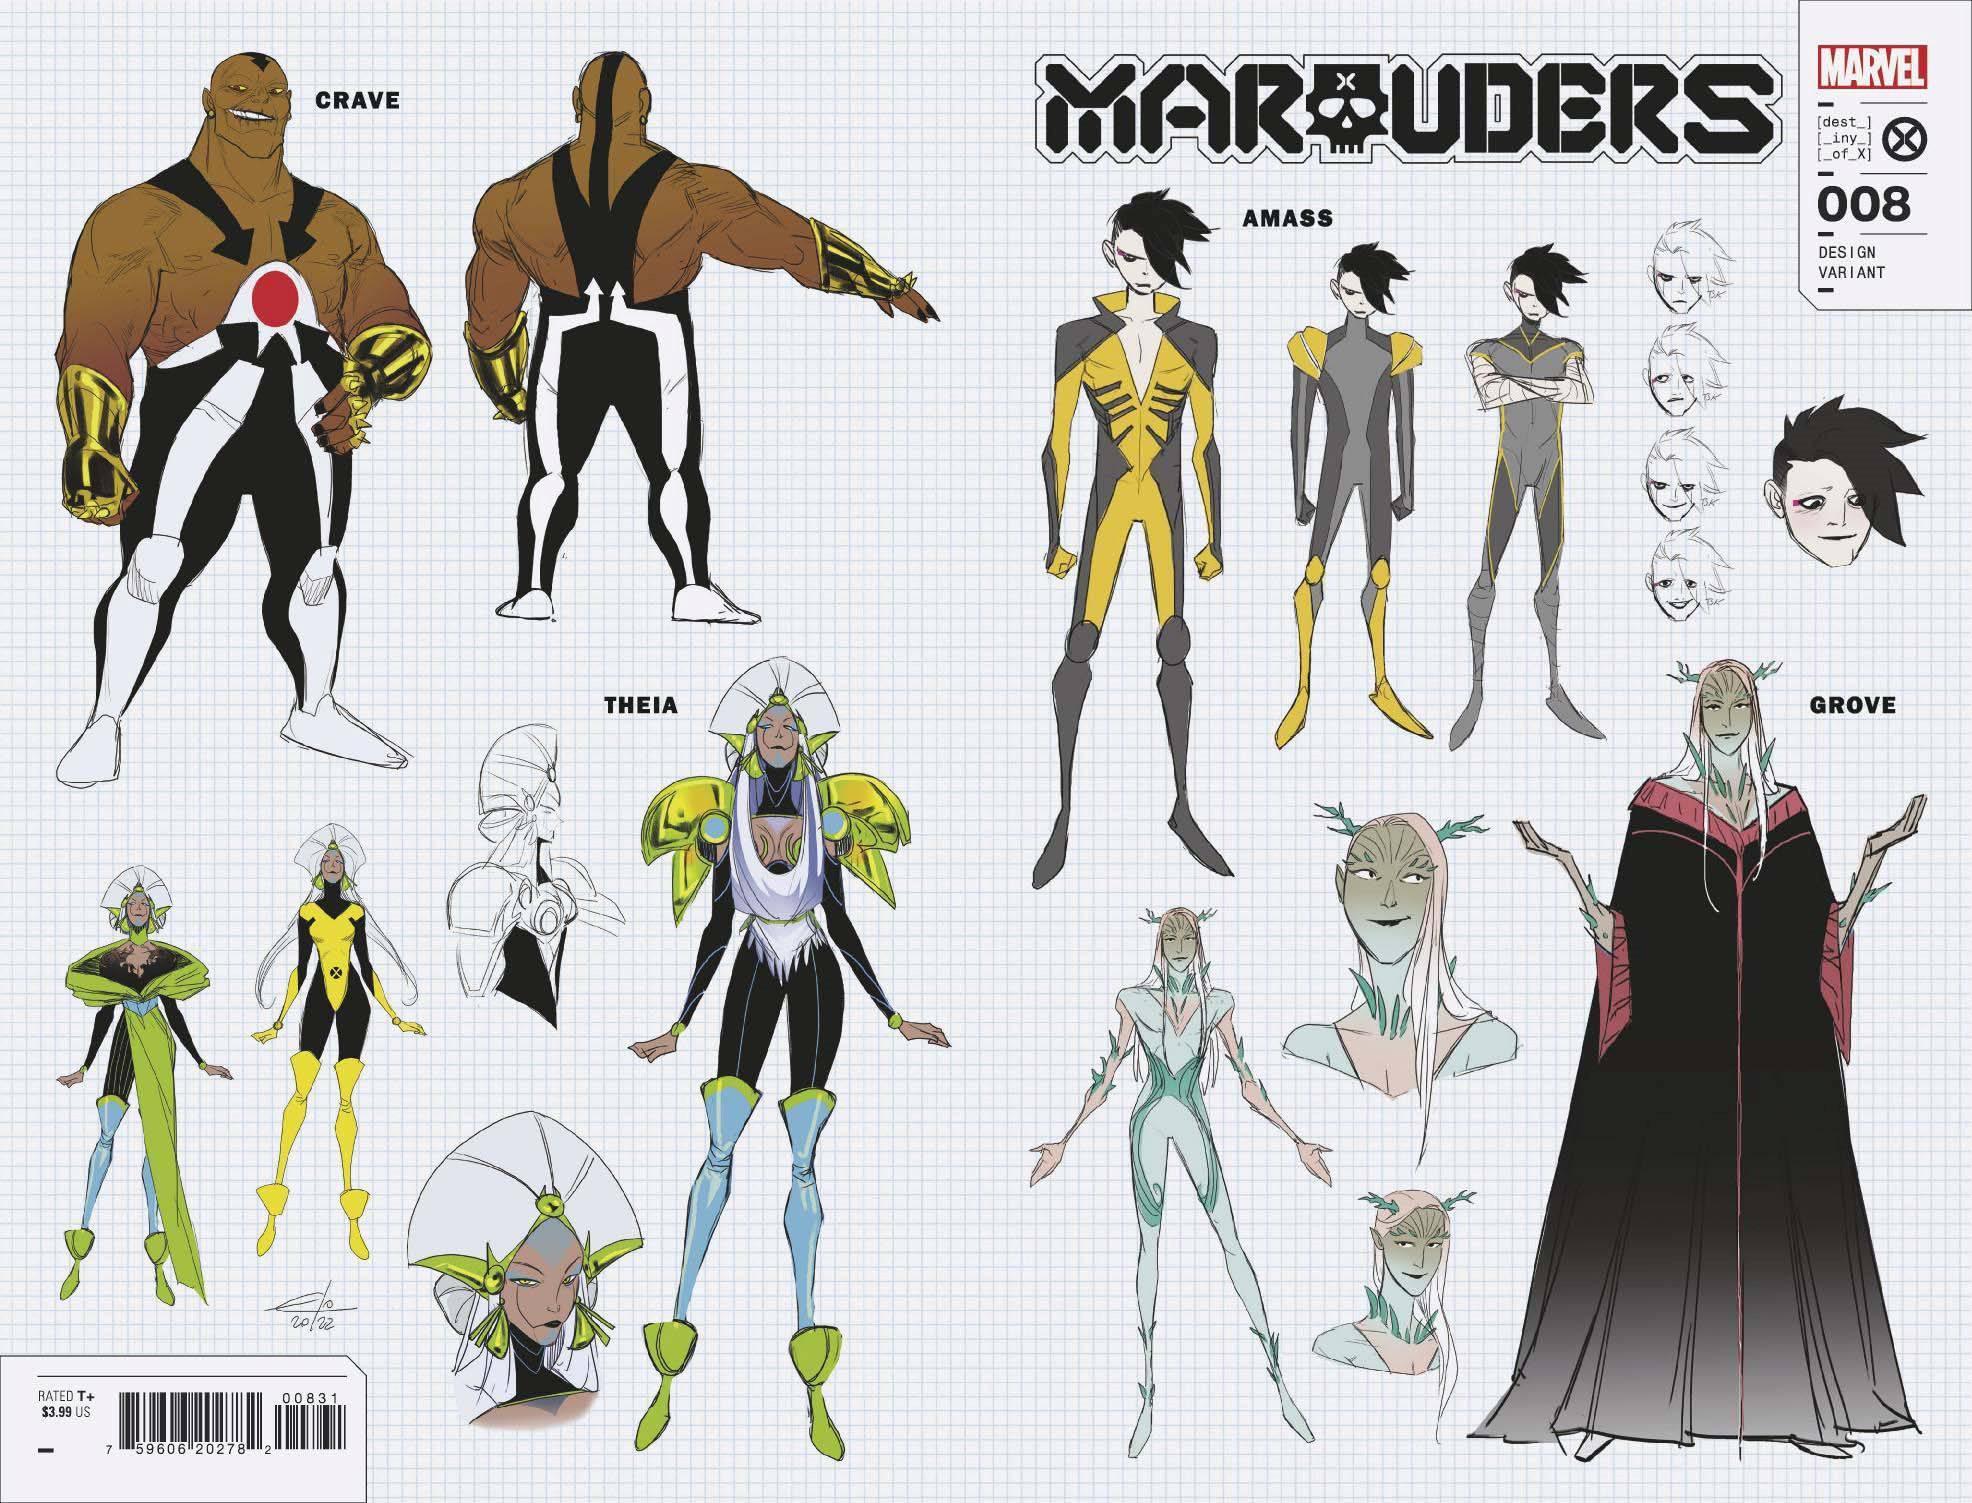 MARAUDERS VOL 2 #8 10 COPY INCV CARLINI NEW CHAR WRPAD DESIGN VAR - Kings Comics